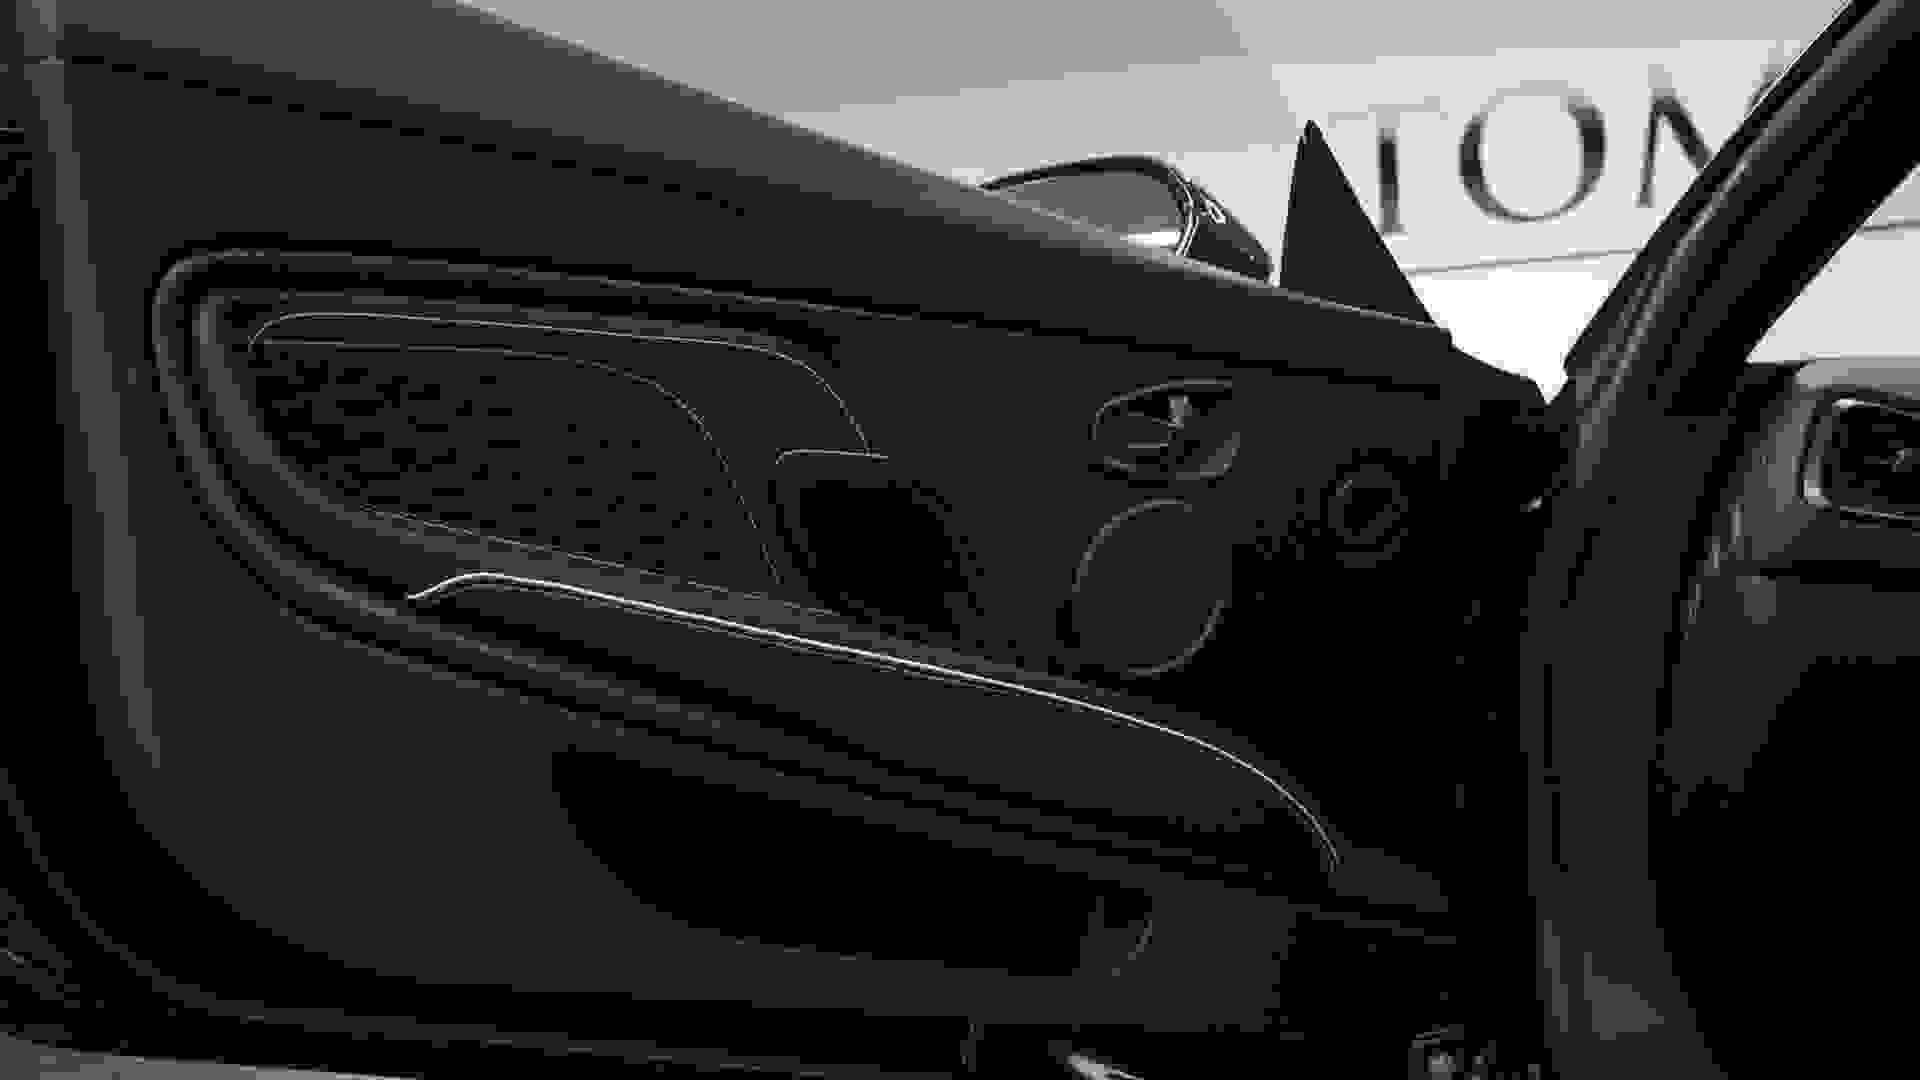 Aston Martin DBS SUPERLEGGERA Photo 2009e159-d1f3-429c-9ab8-a5cd244d3dcb.jpg